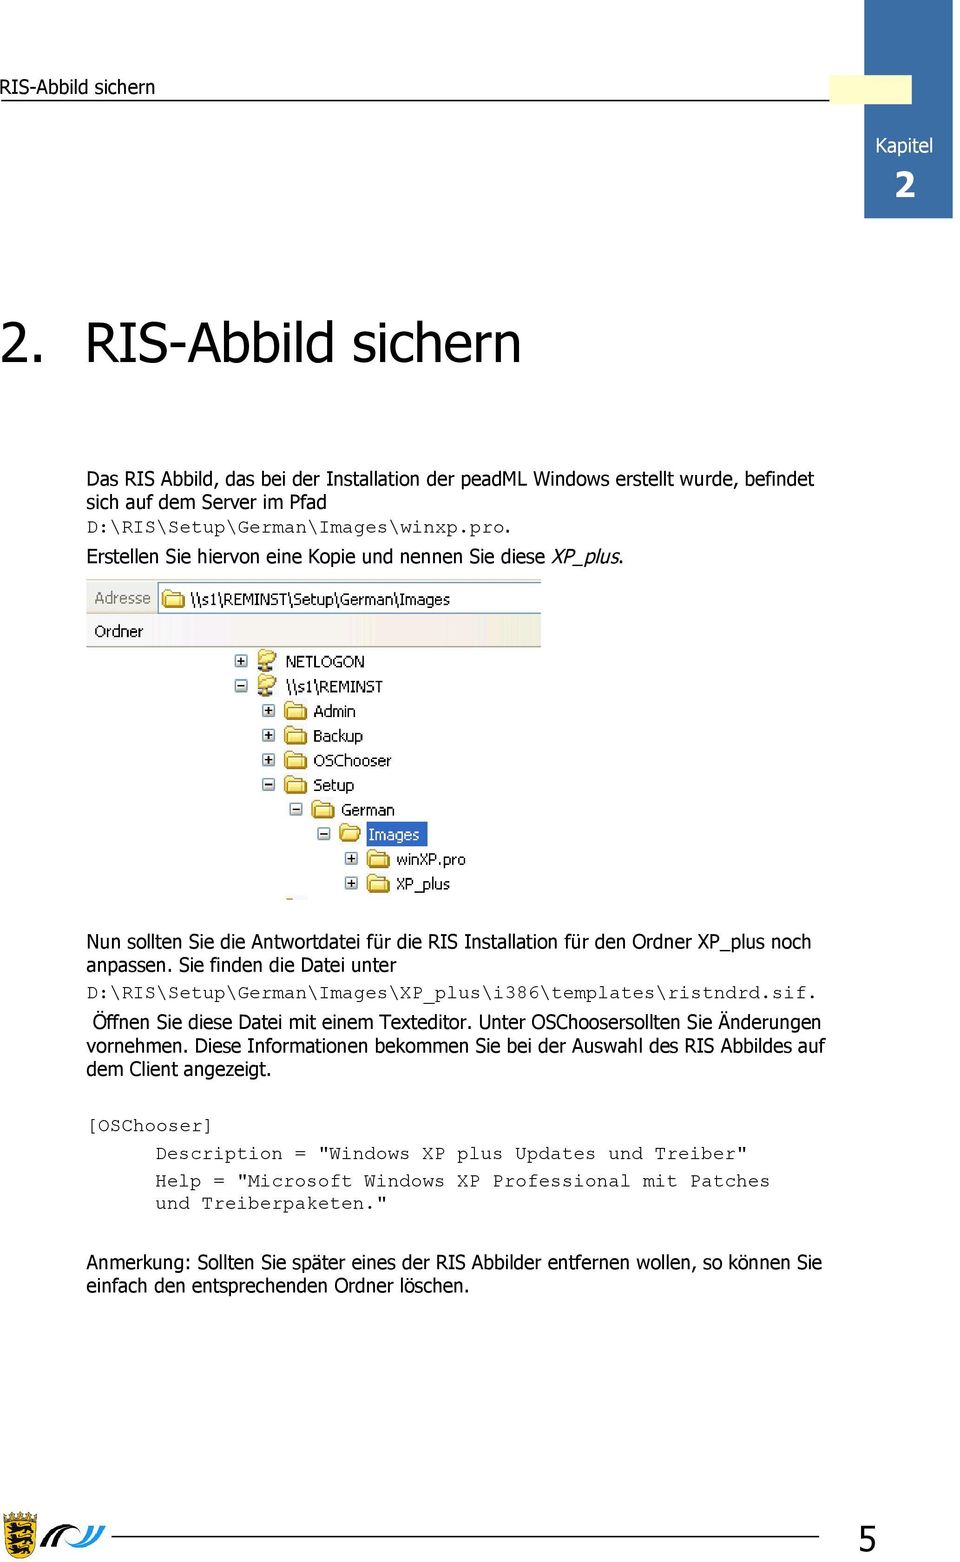 Sie finden die Datei unter D:\RIS\Setup\German\Images\XP_plus\i386\templates\ristndrd.sif. Öffnen Sie diese Datei mit einem Texteditor. Unter OSChoosersollten Sie Änderungen vornehmen.